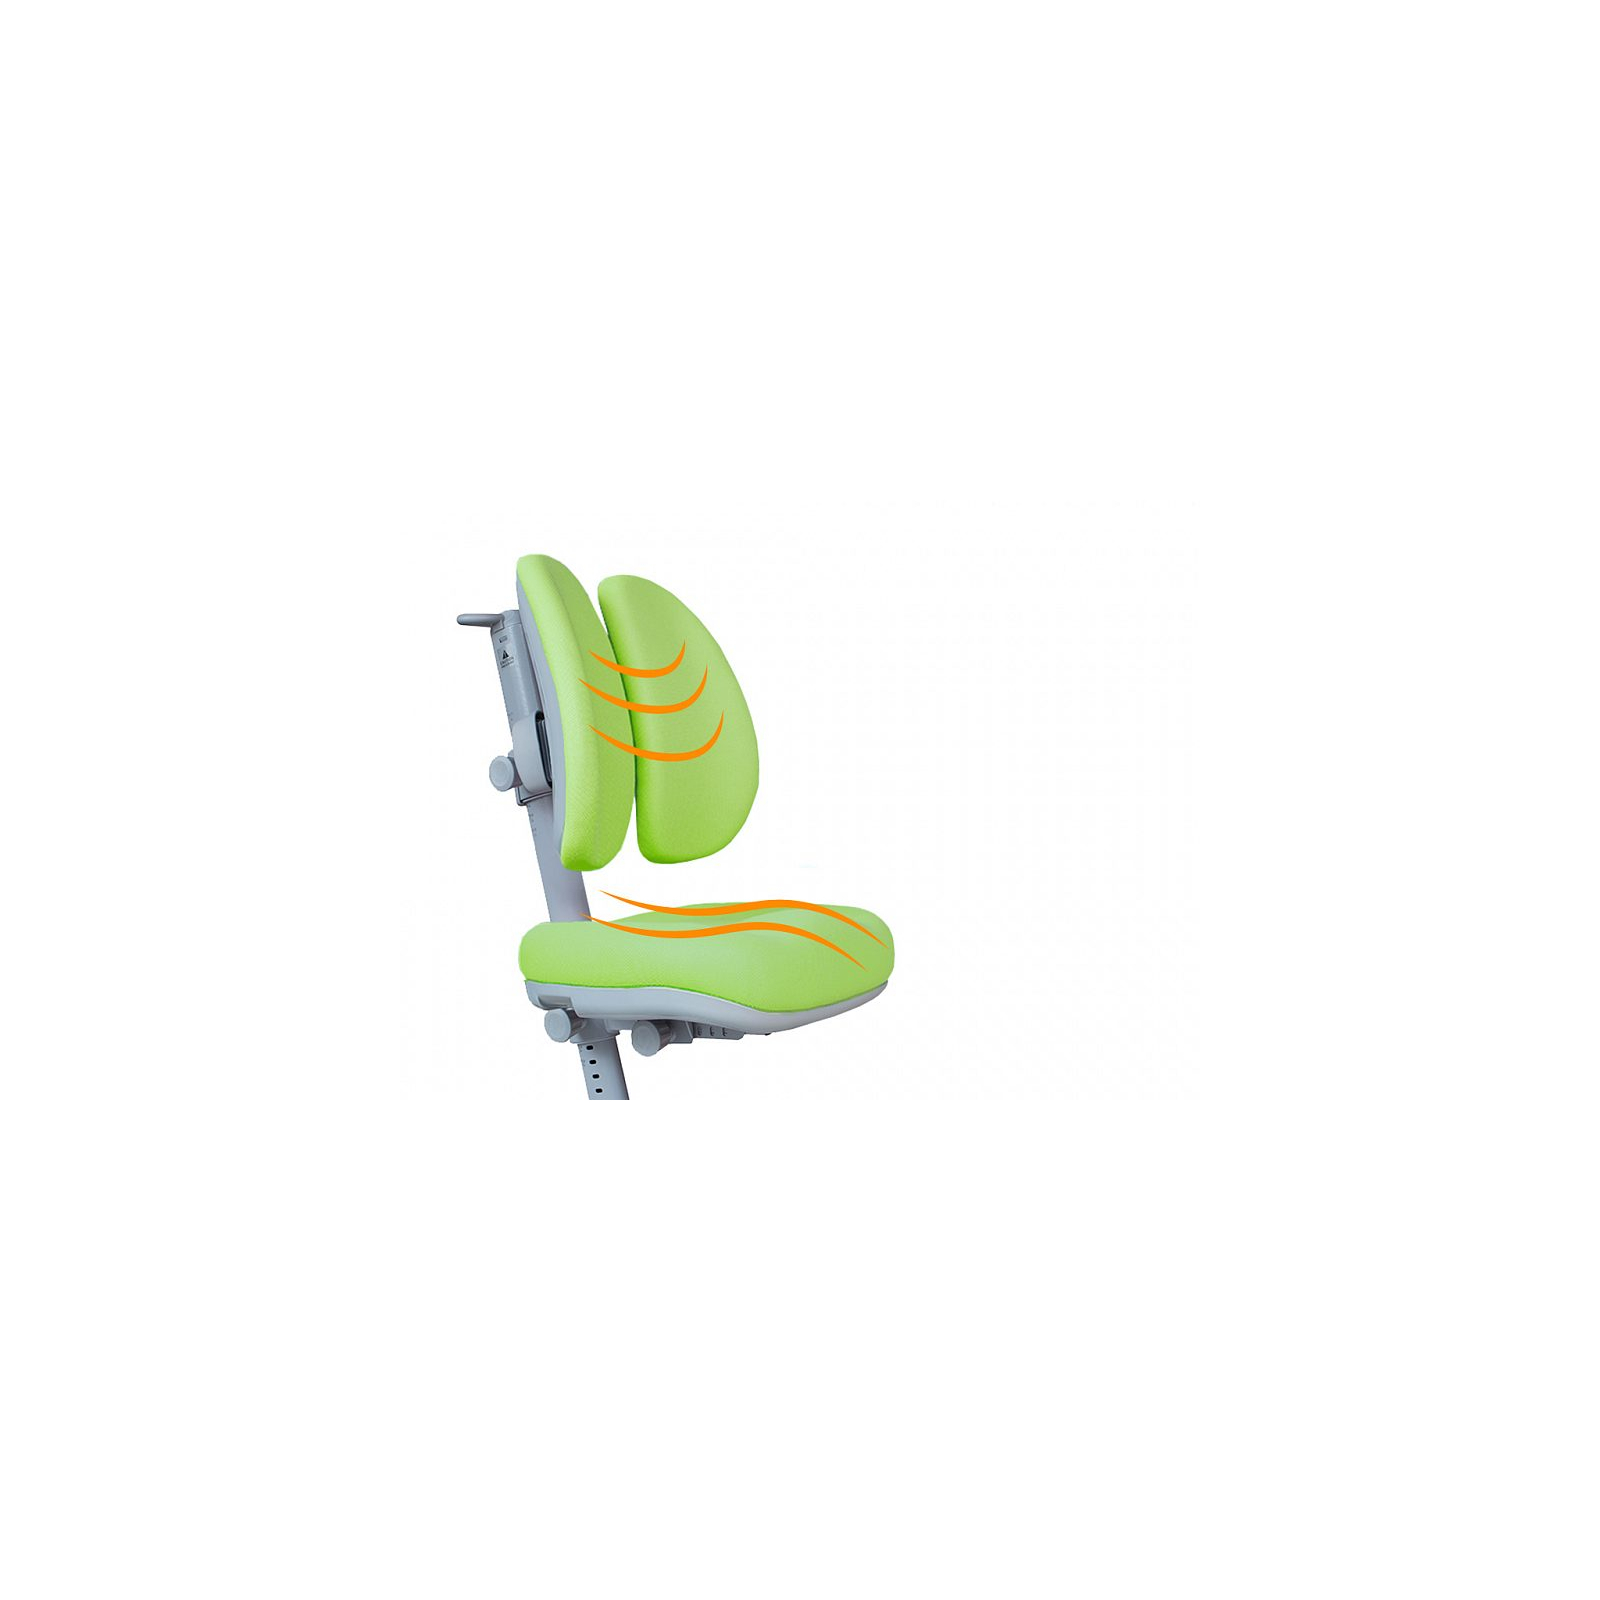 Дитяче крісло Mealux Onyx Duo DGB (Y-115 DGB) зображення 2